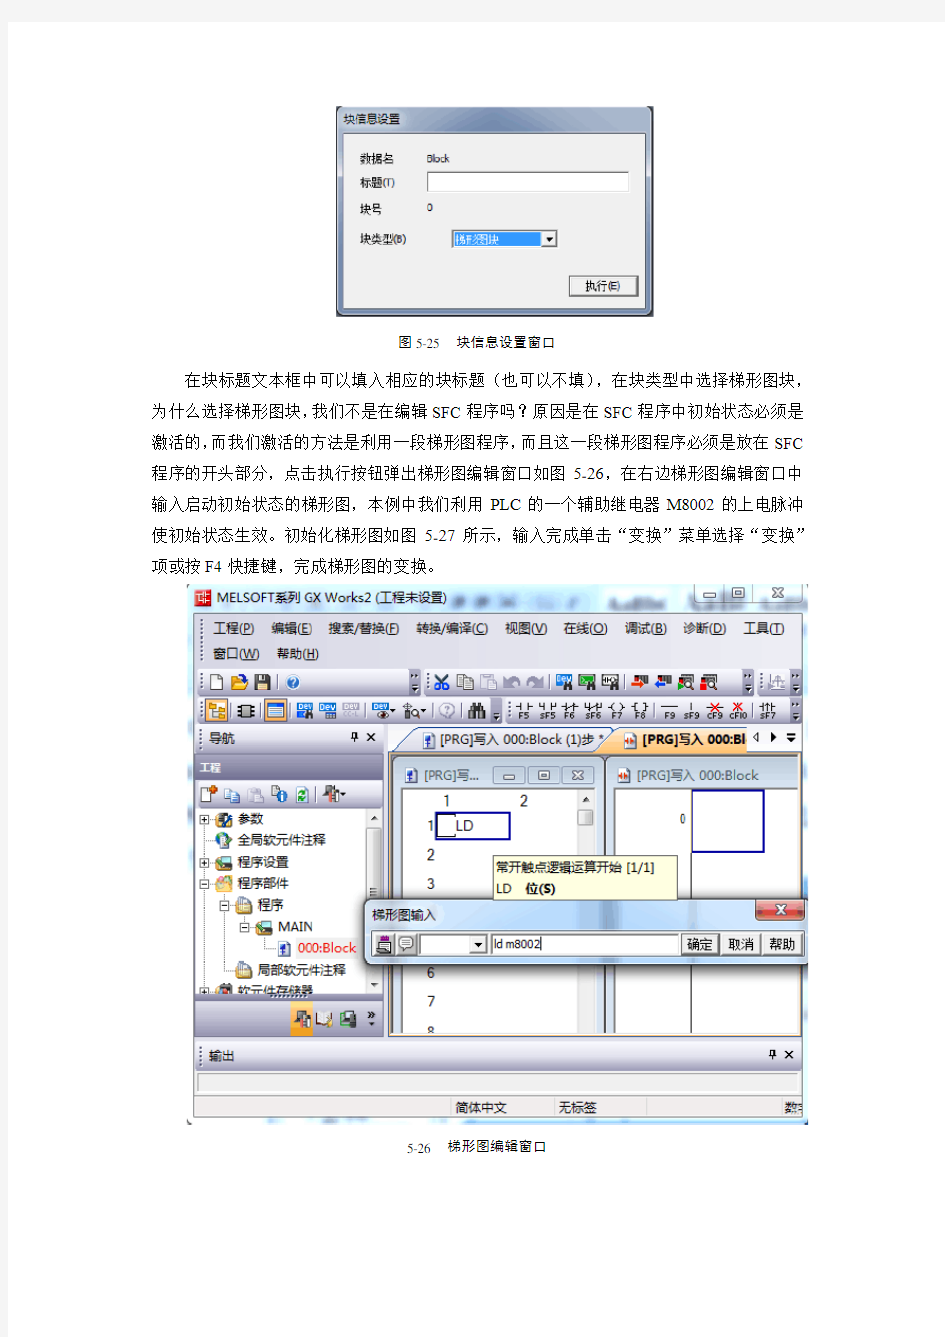 GX-Works2编程软件SFC流程图编写知识交流